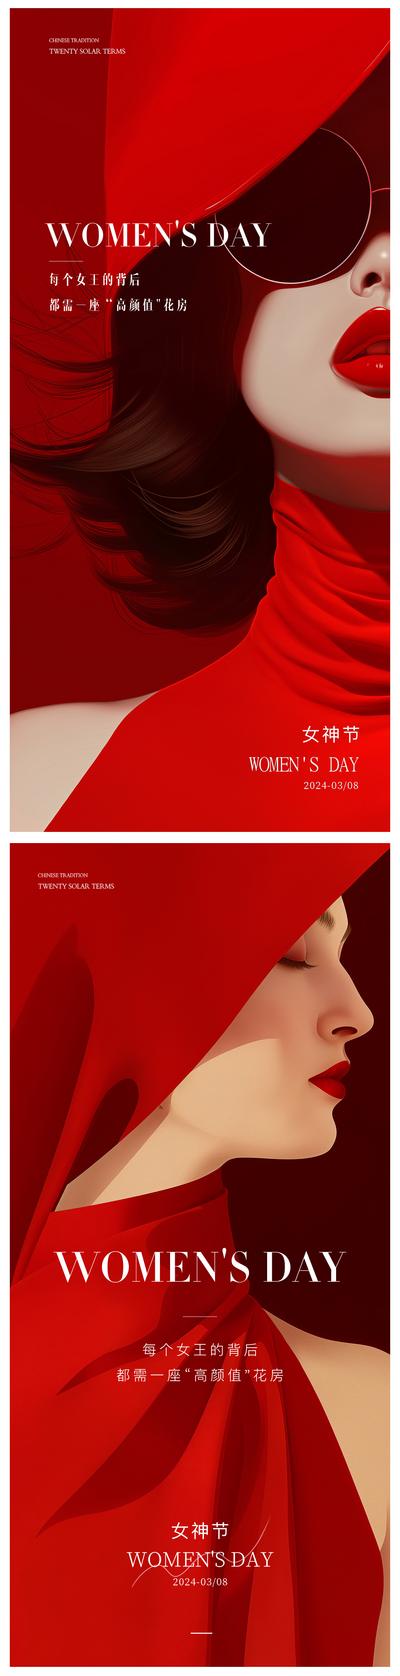 南门网 广告 海报 节日 妇女节 插画 医美 公历节日 女神节 女性 丝绸